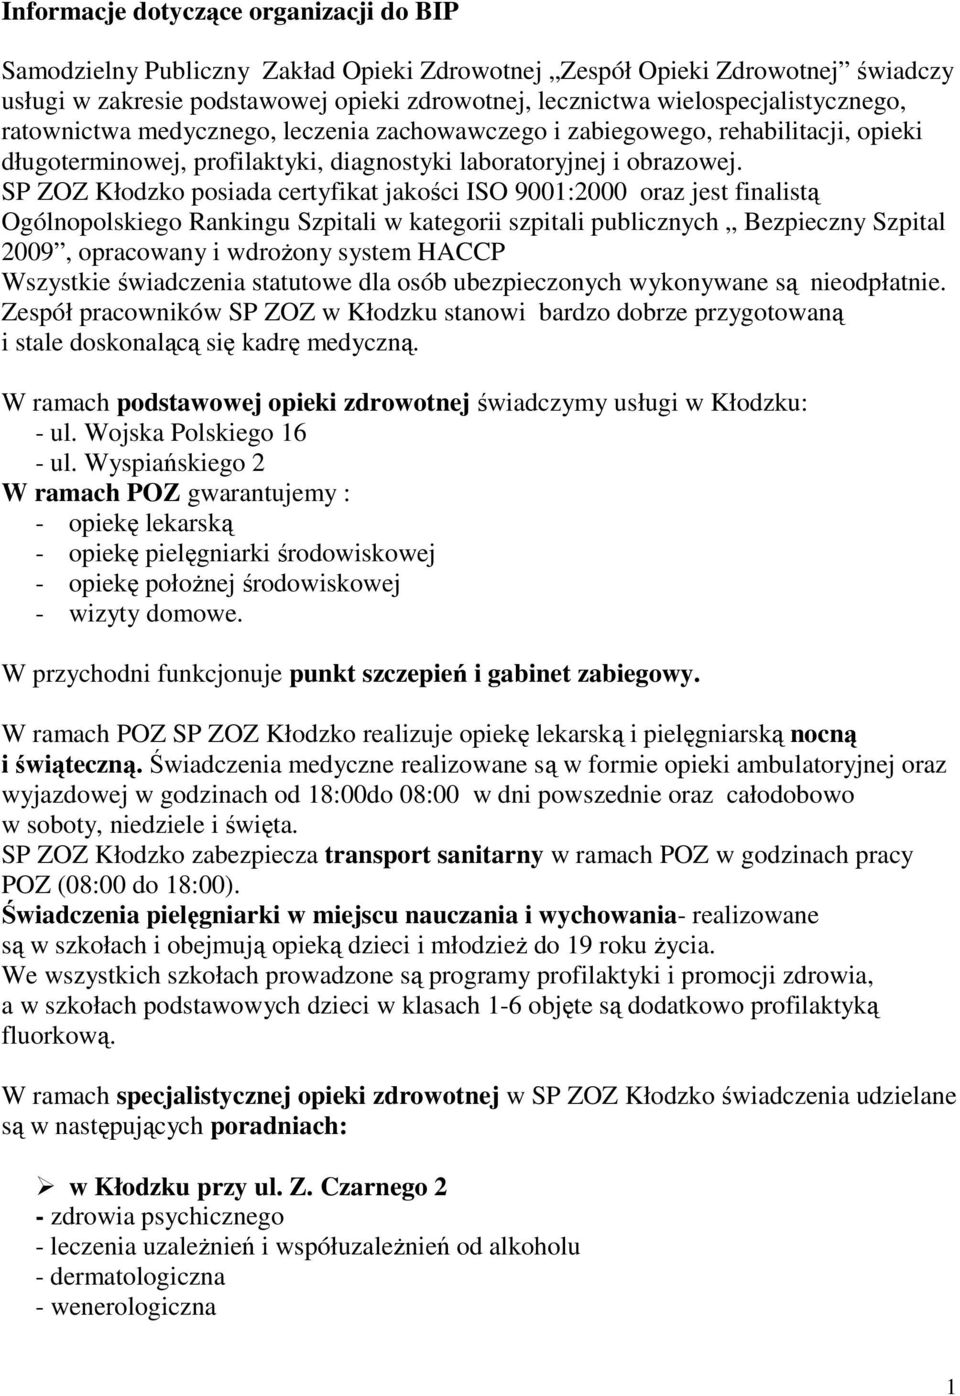 SP ZOZ Kłodzko posiada certyfikat jakości ISO 9001:2000 oraz jest finalistą Ogólnopolskiego Rankingu Szpitali w kategorii szpitali publicznych Bezpieczny Szpital 2009, opracowany i wdroŝony system